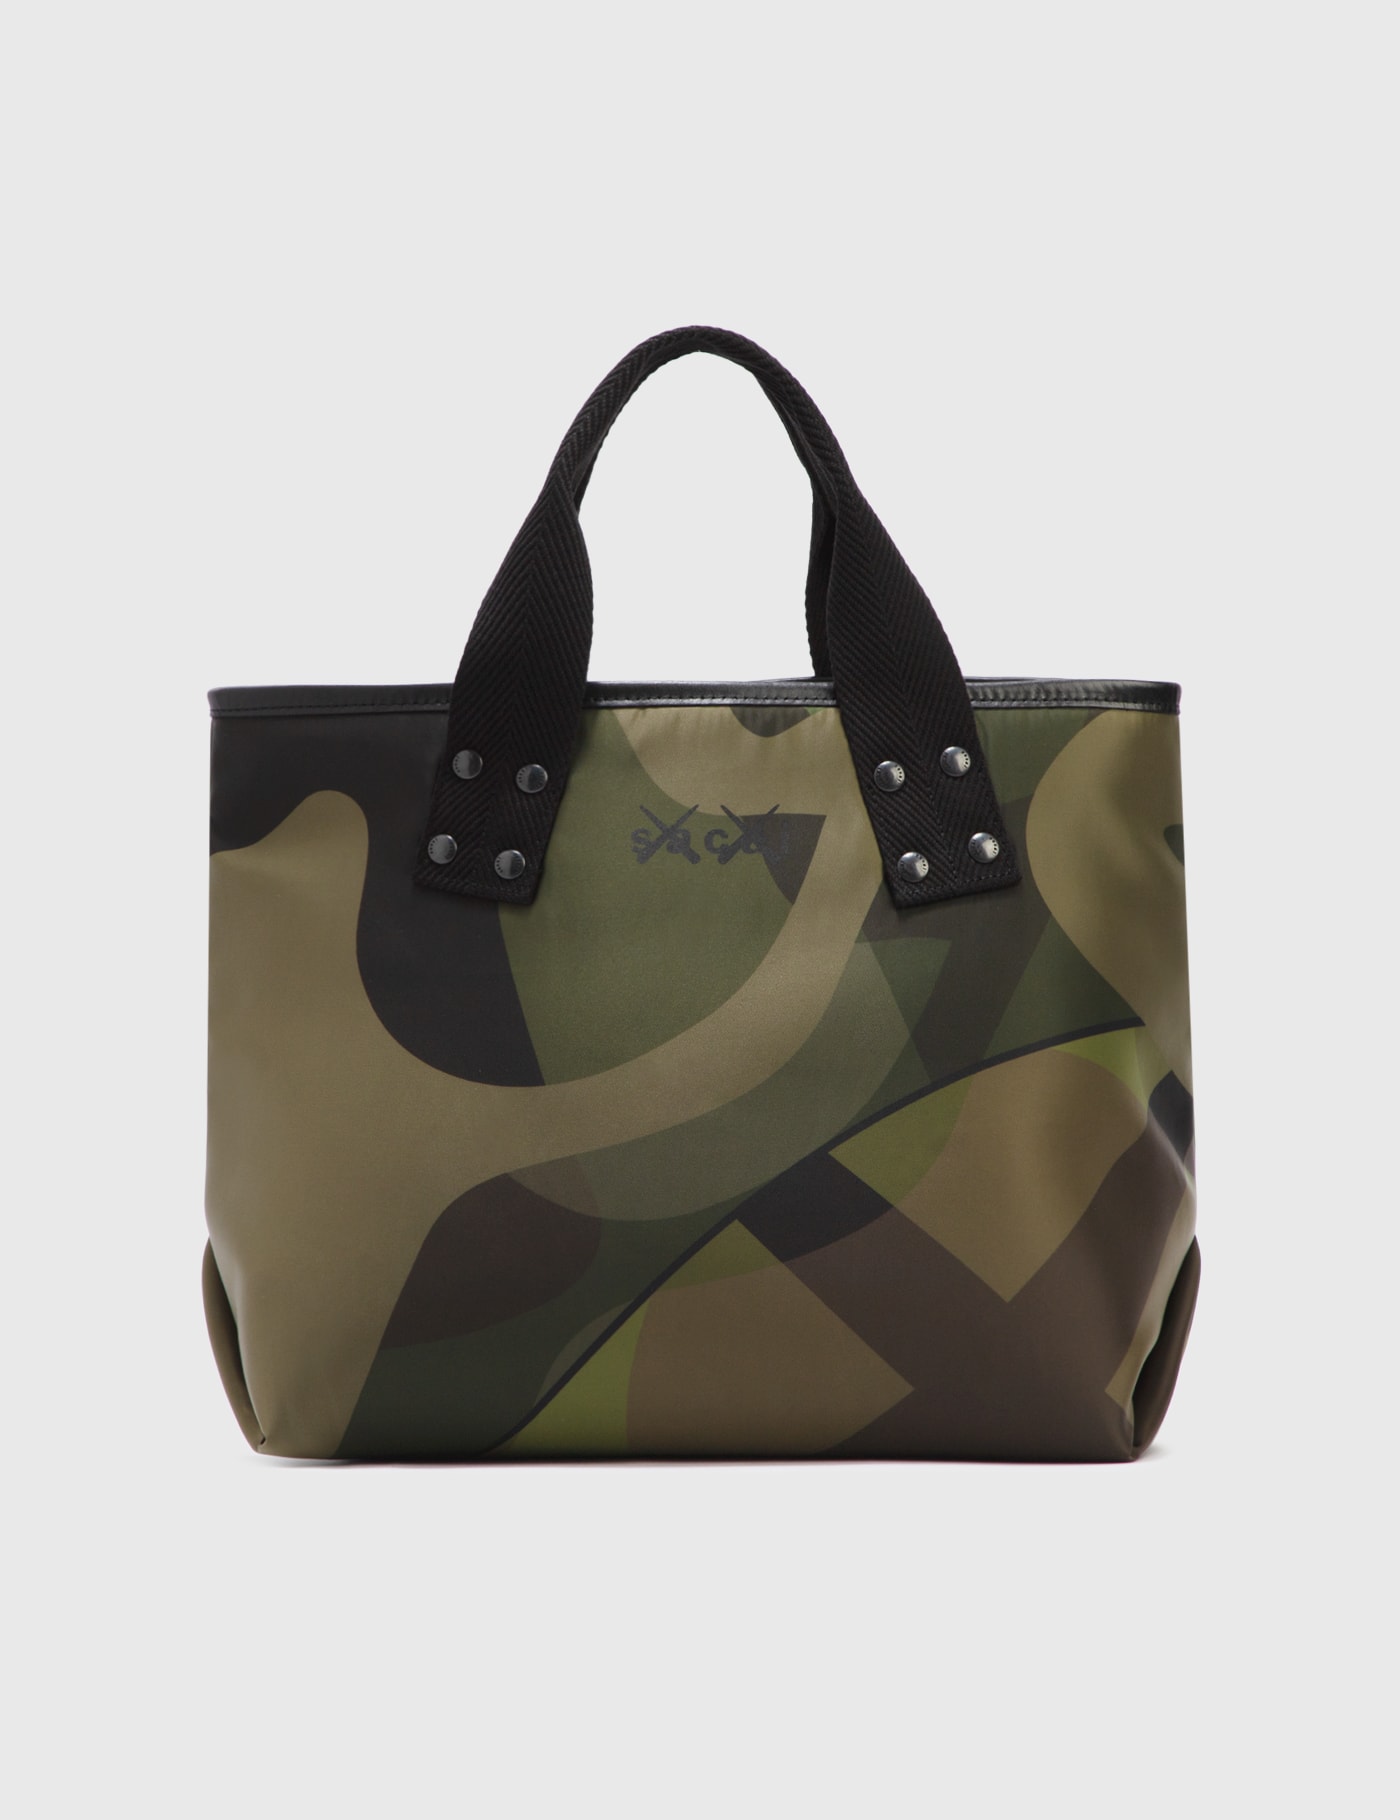 Sacai - KAWS Medium Tote Bag | HBX